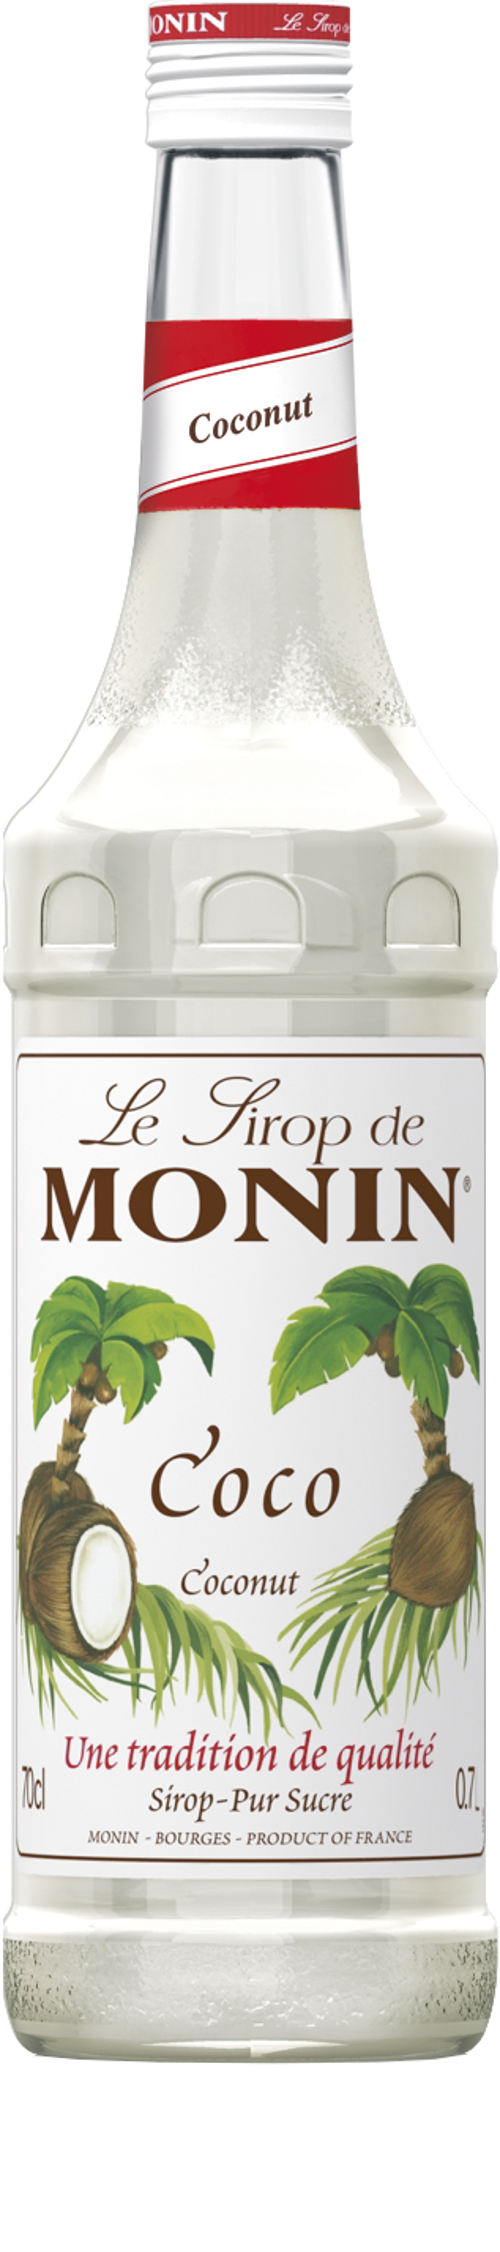 Le Sirop de MONIN Coconut 0.7l